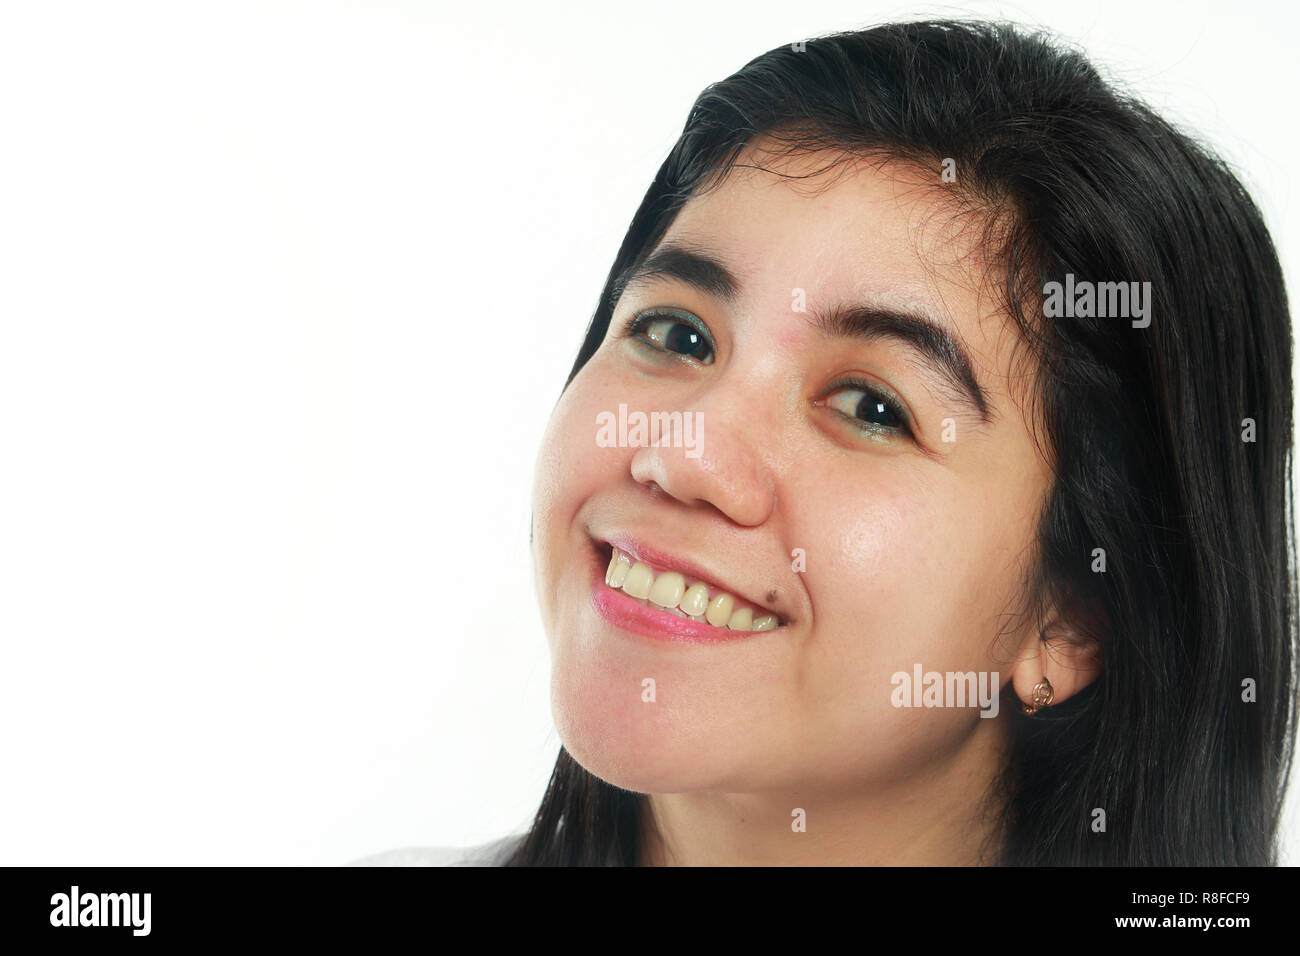 Foto Bild Portrait einer schönen nette junge asiatische Frau mit Mole sah sehr glücklich und lächelnd, bis Portrait über weißen Hintergrund schließen Stockfoto